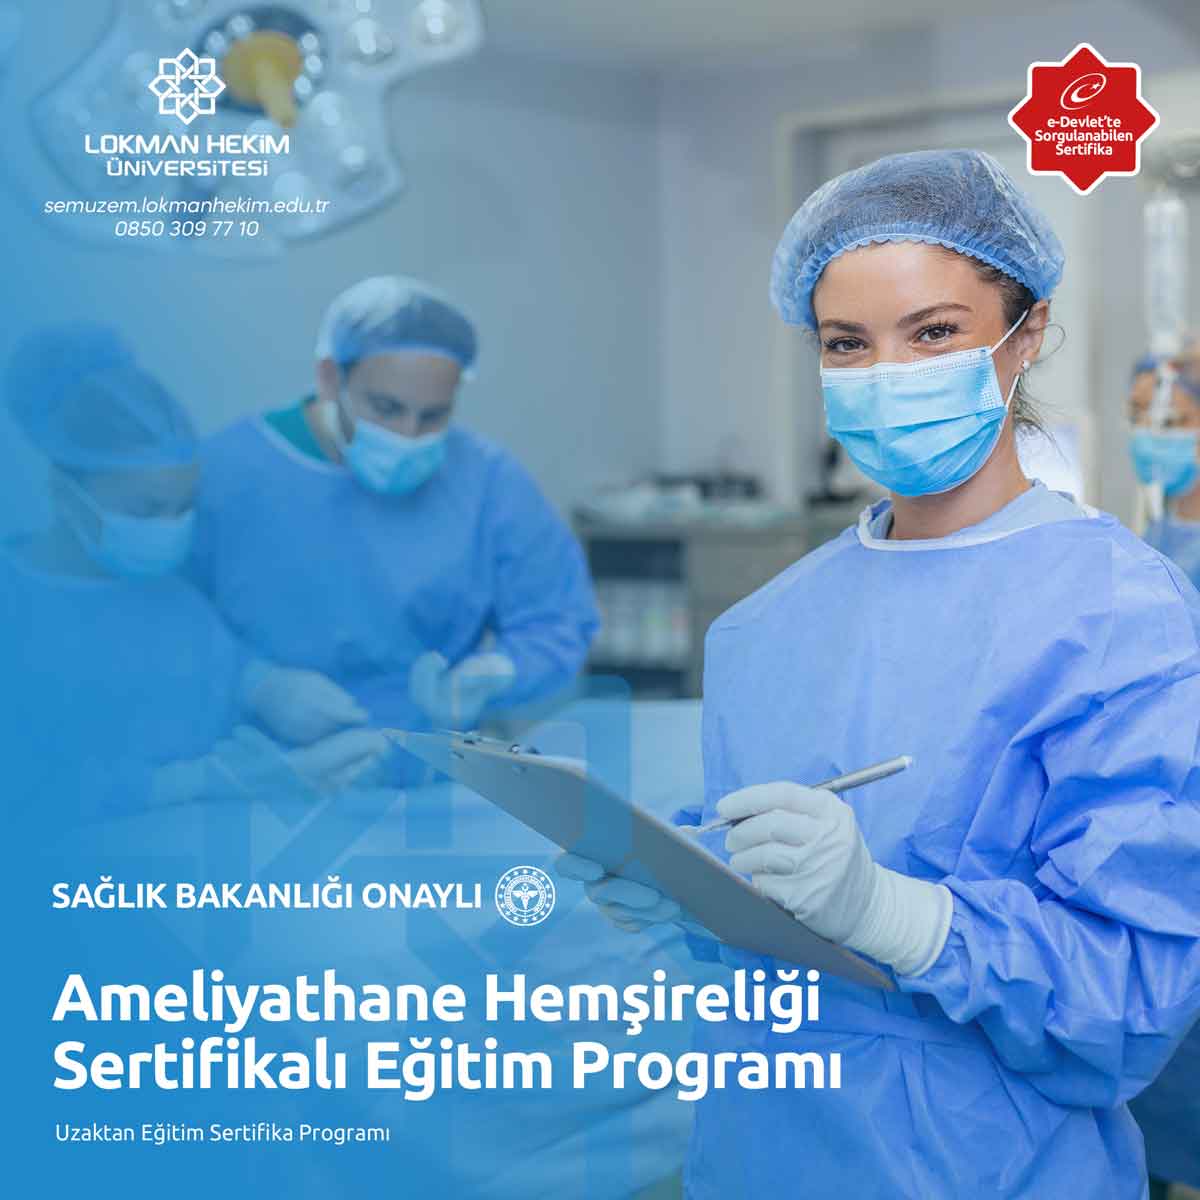 Ameliyathane Hemşireliği Sertifikalı Eğitim Programı